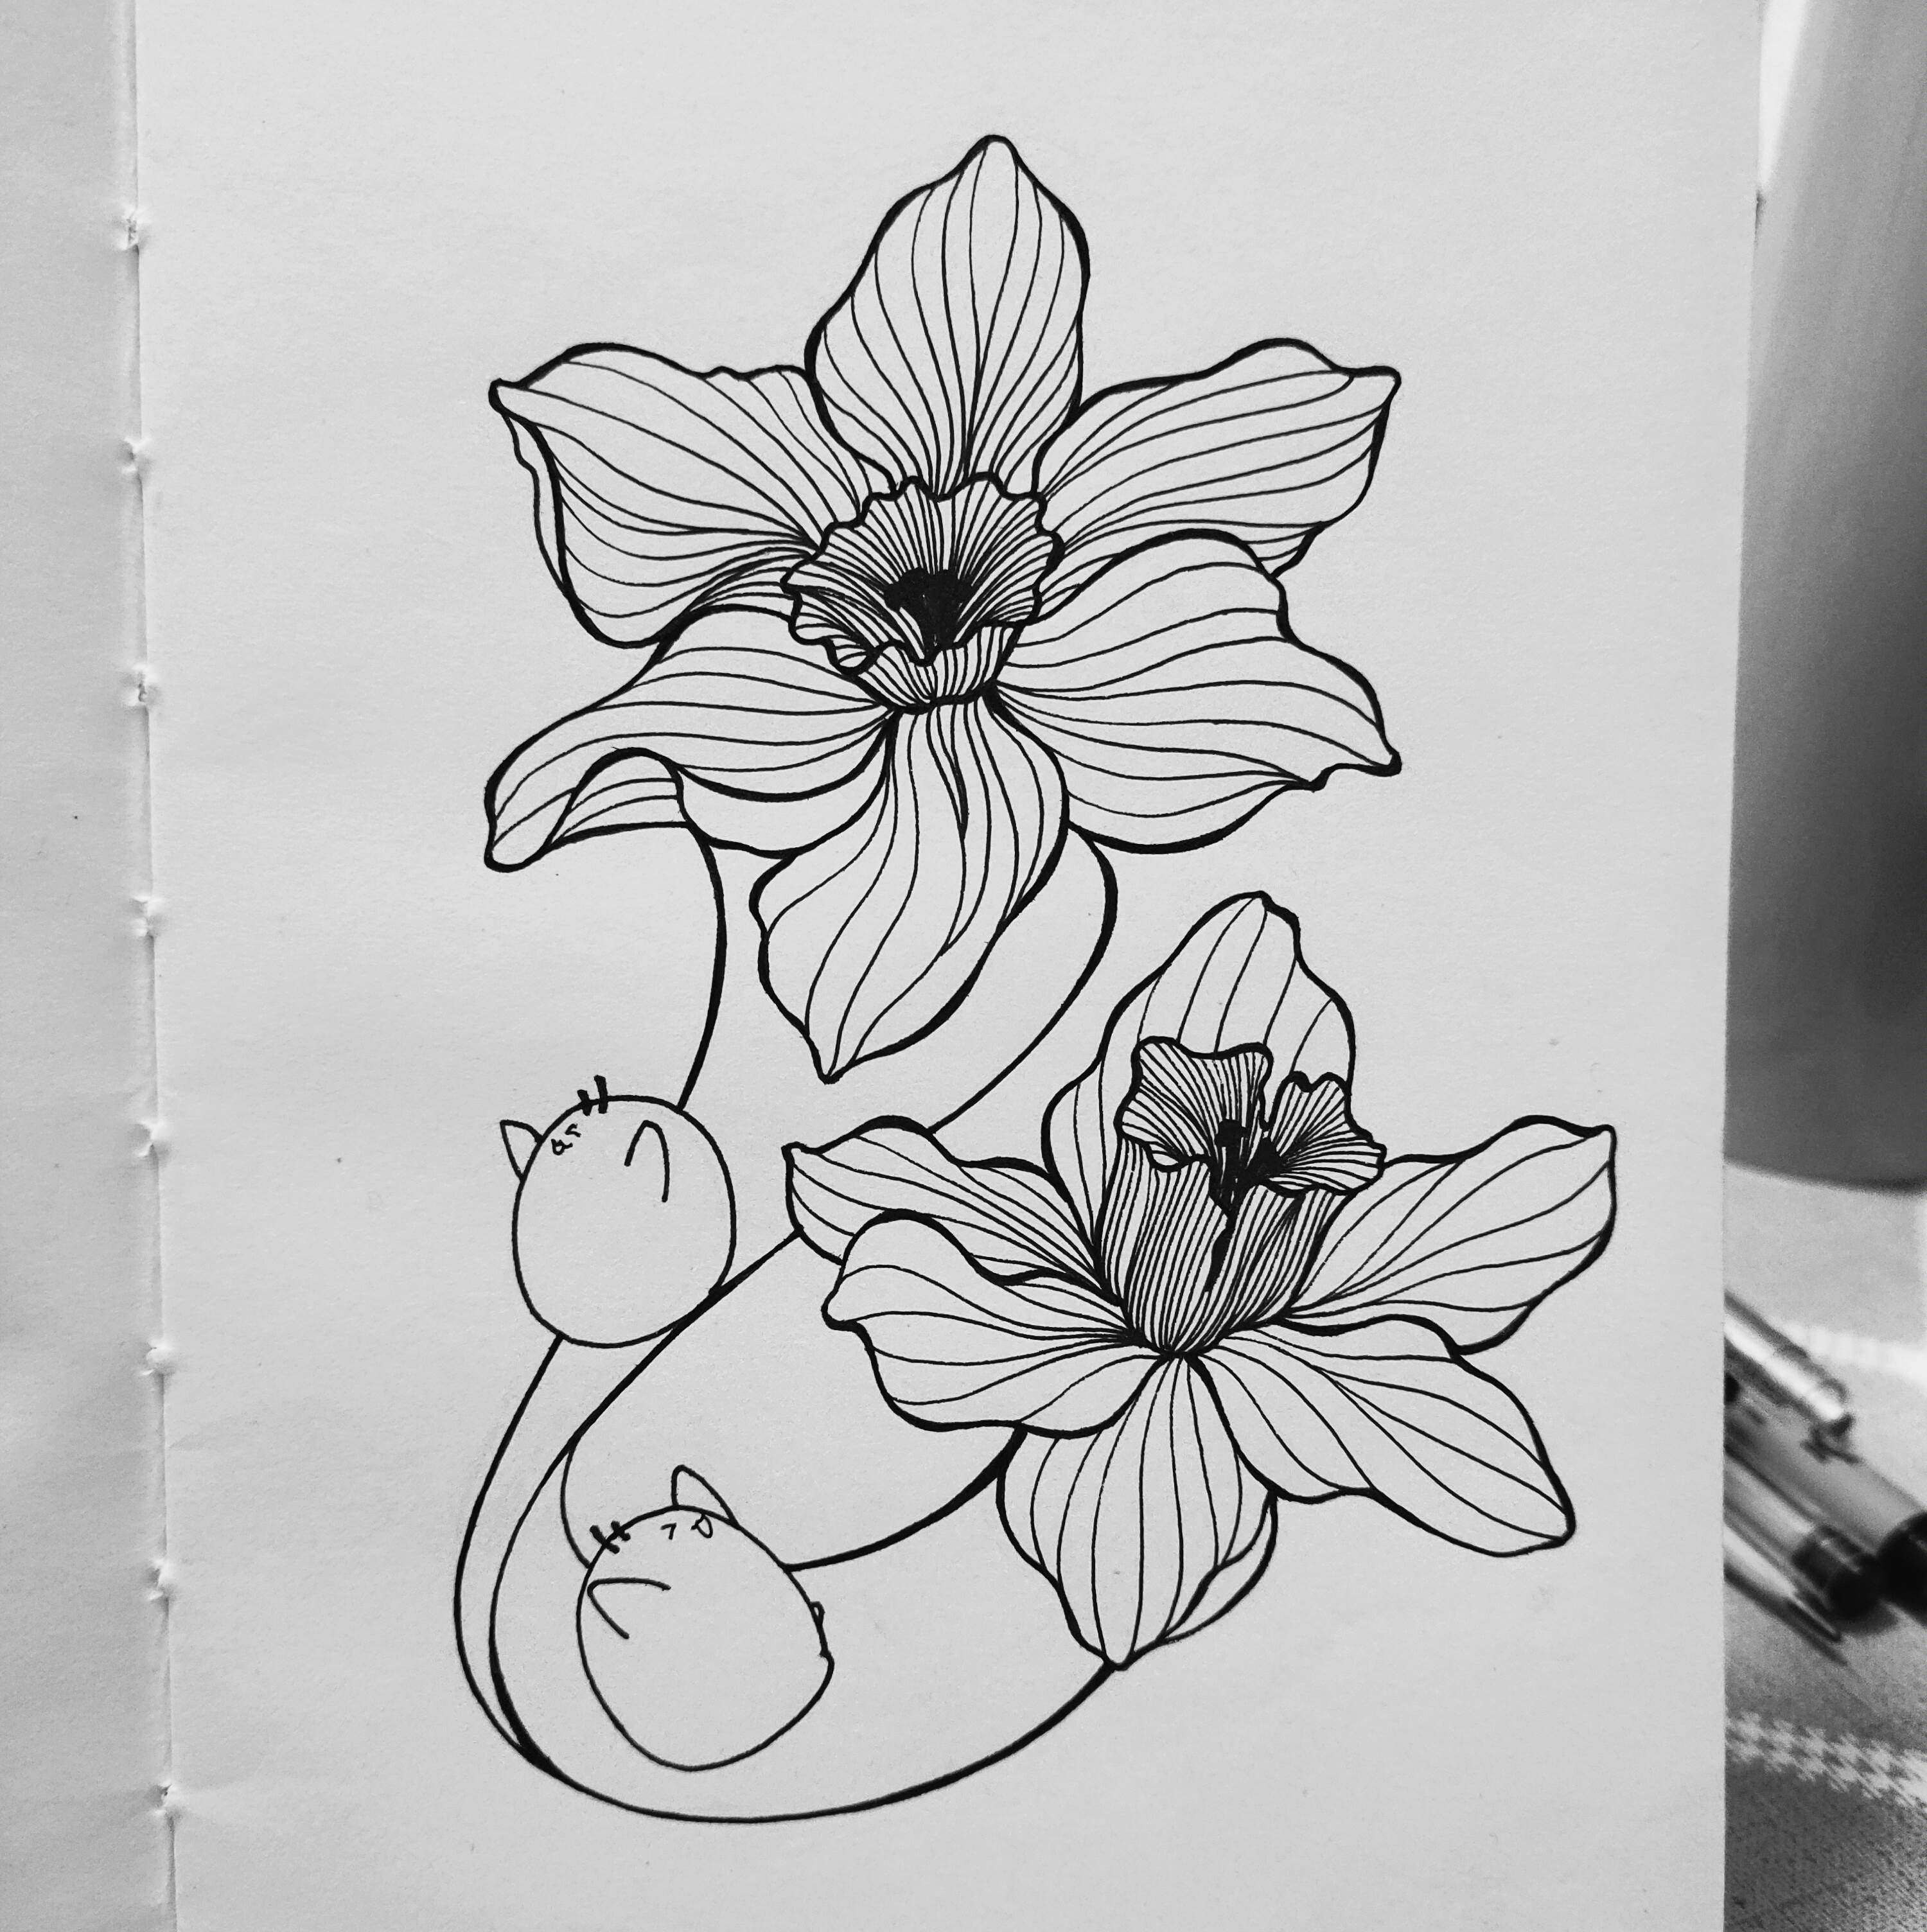 零基础教你画两朵创意水仙花,简单又好看水仙花简笔画图片水仙花怎么